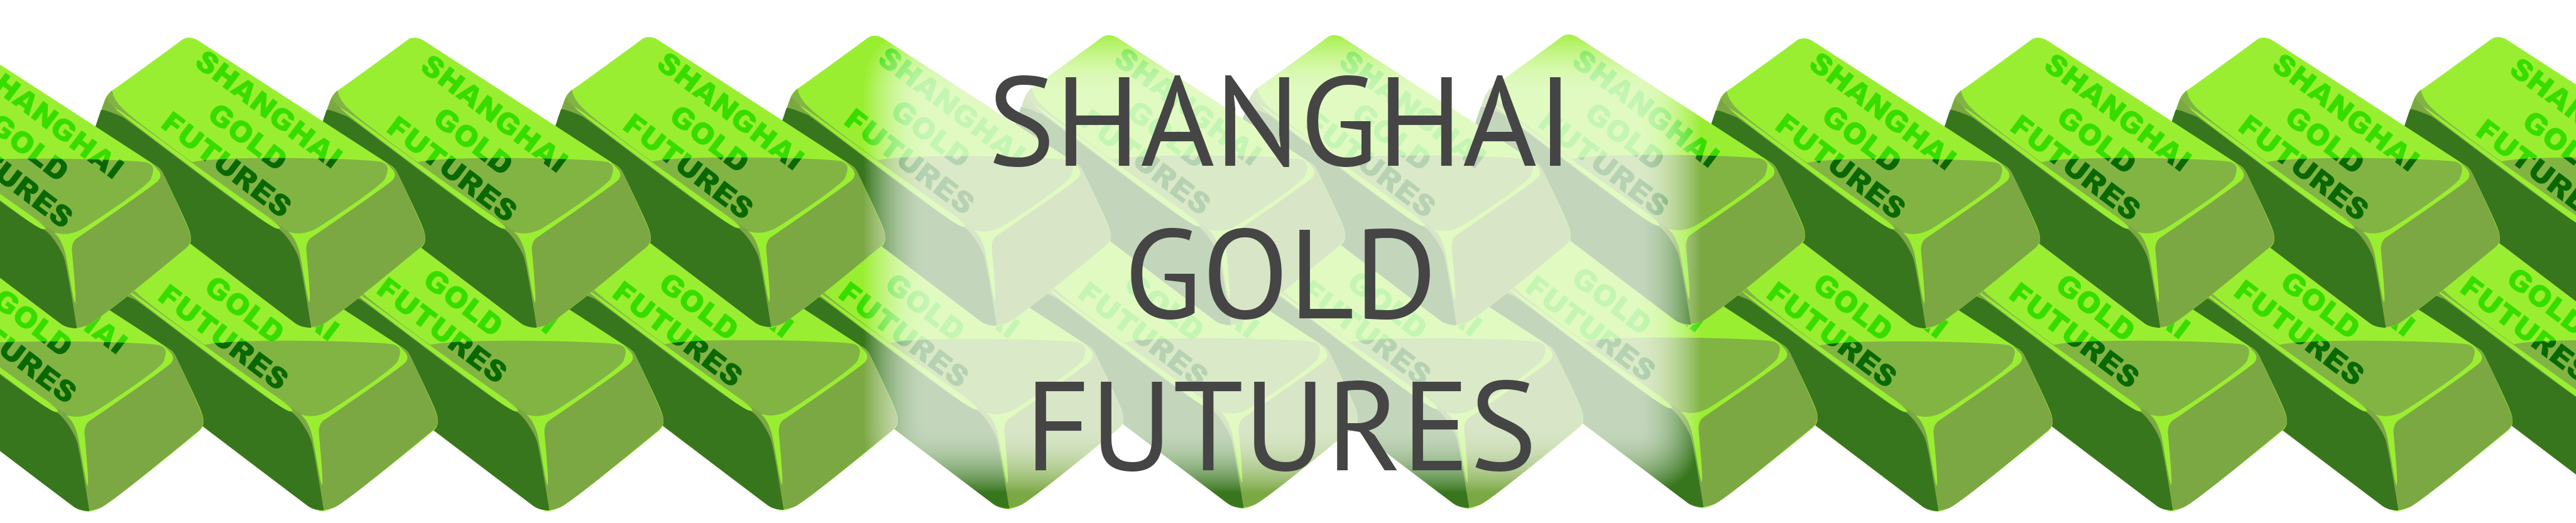 CME Introduces Shanghai Gold Futures - IRONBEAM